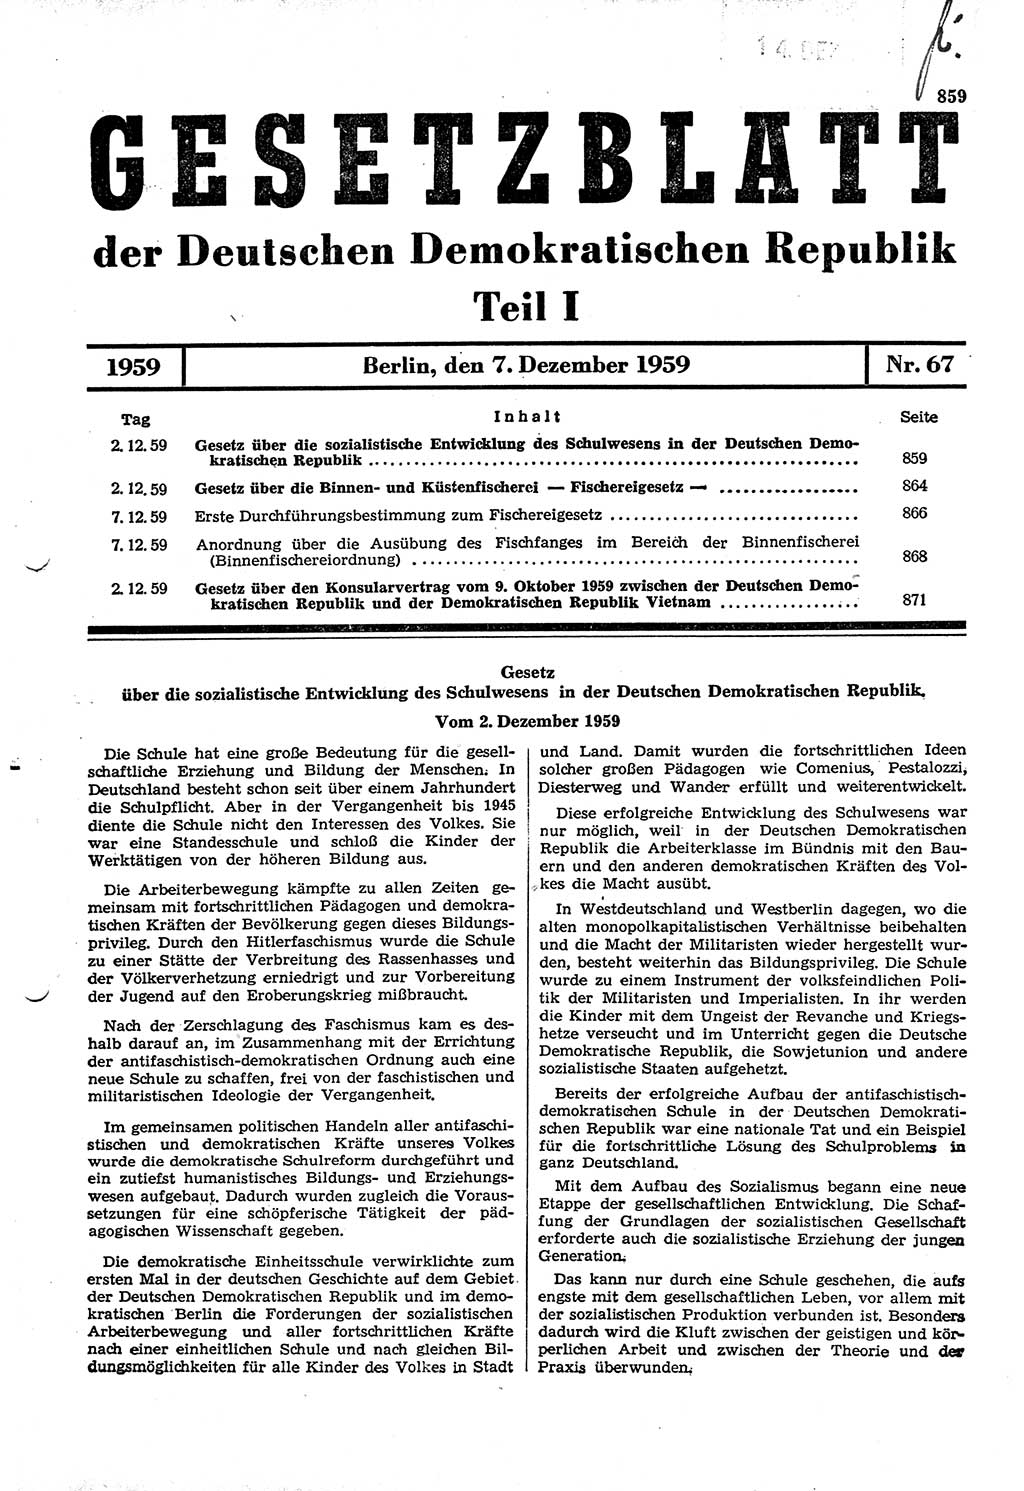 Gesetzblatt (GBl.) der Deutschen Demokratischen Republik (DDR) Teil Ⅰ 1959, Seite 859 (GBl. DDR Ⅰ 1959, S. 859)